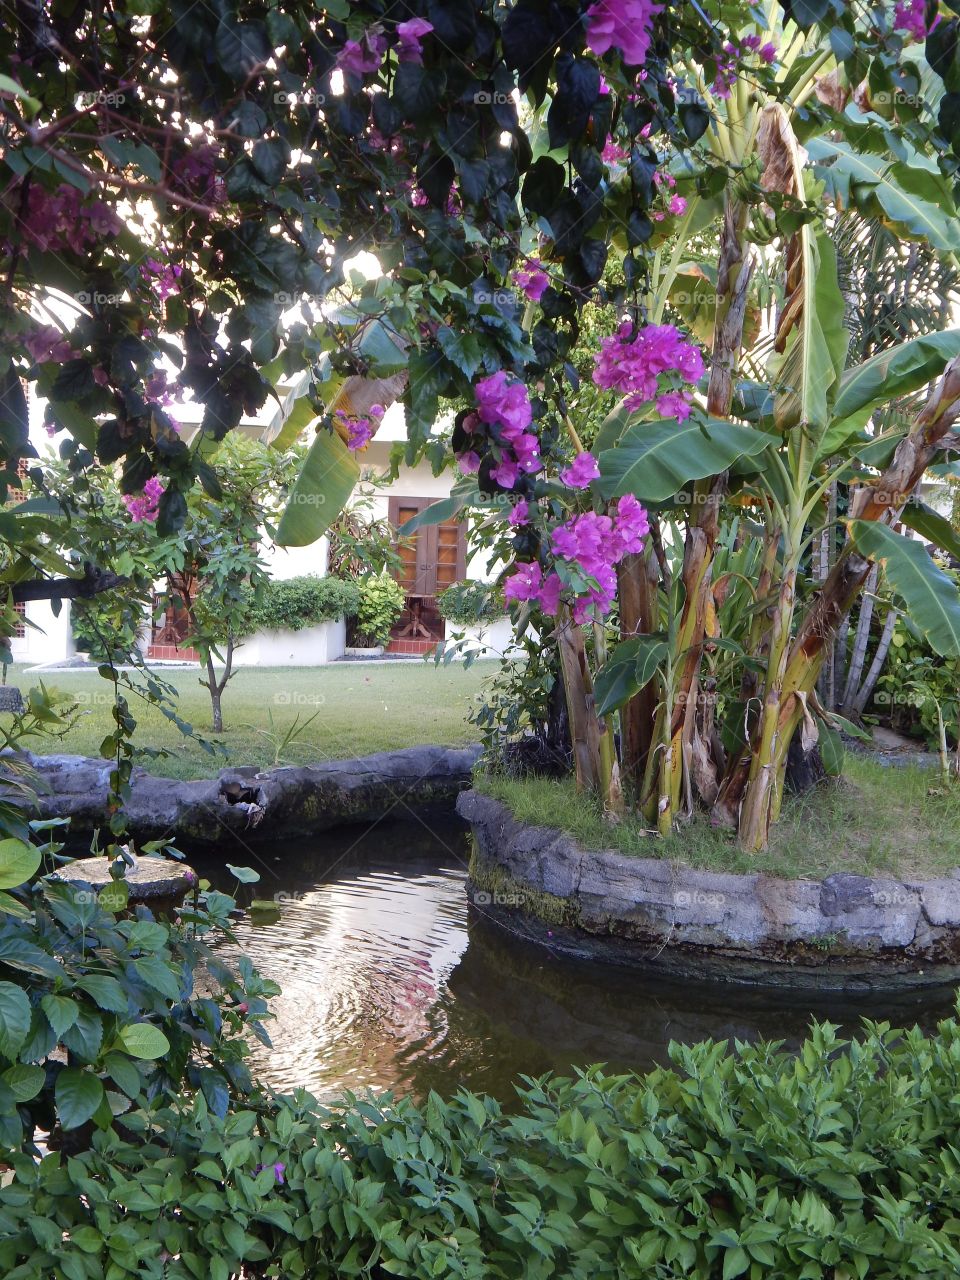 Garden scene with pond